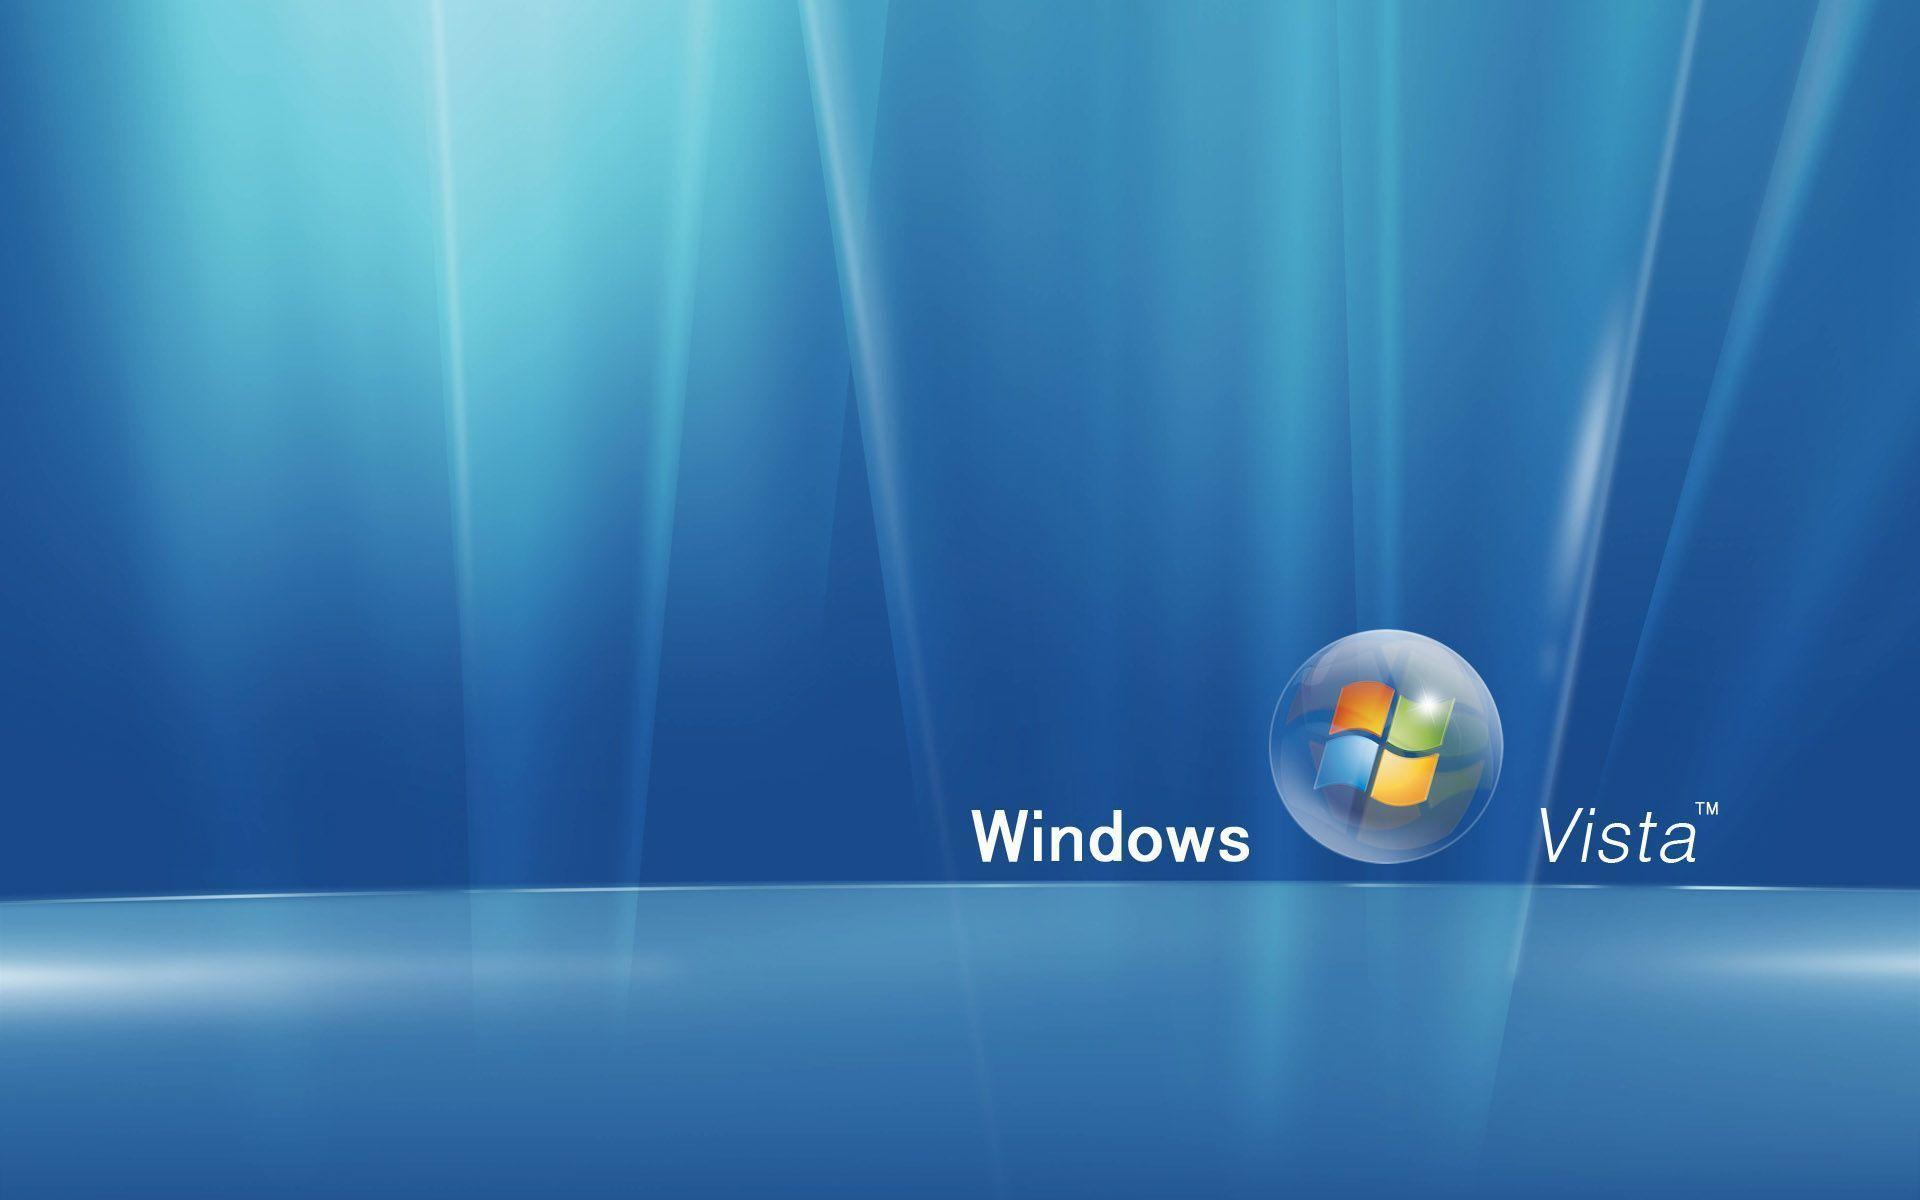 First Class Windows Vista Desktop Wallpaper 1920x1200PX